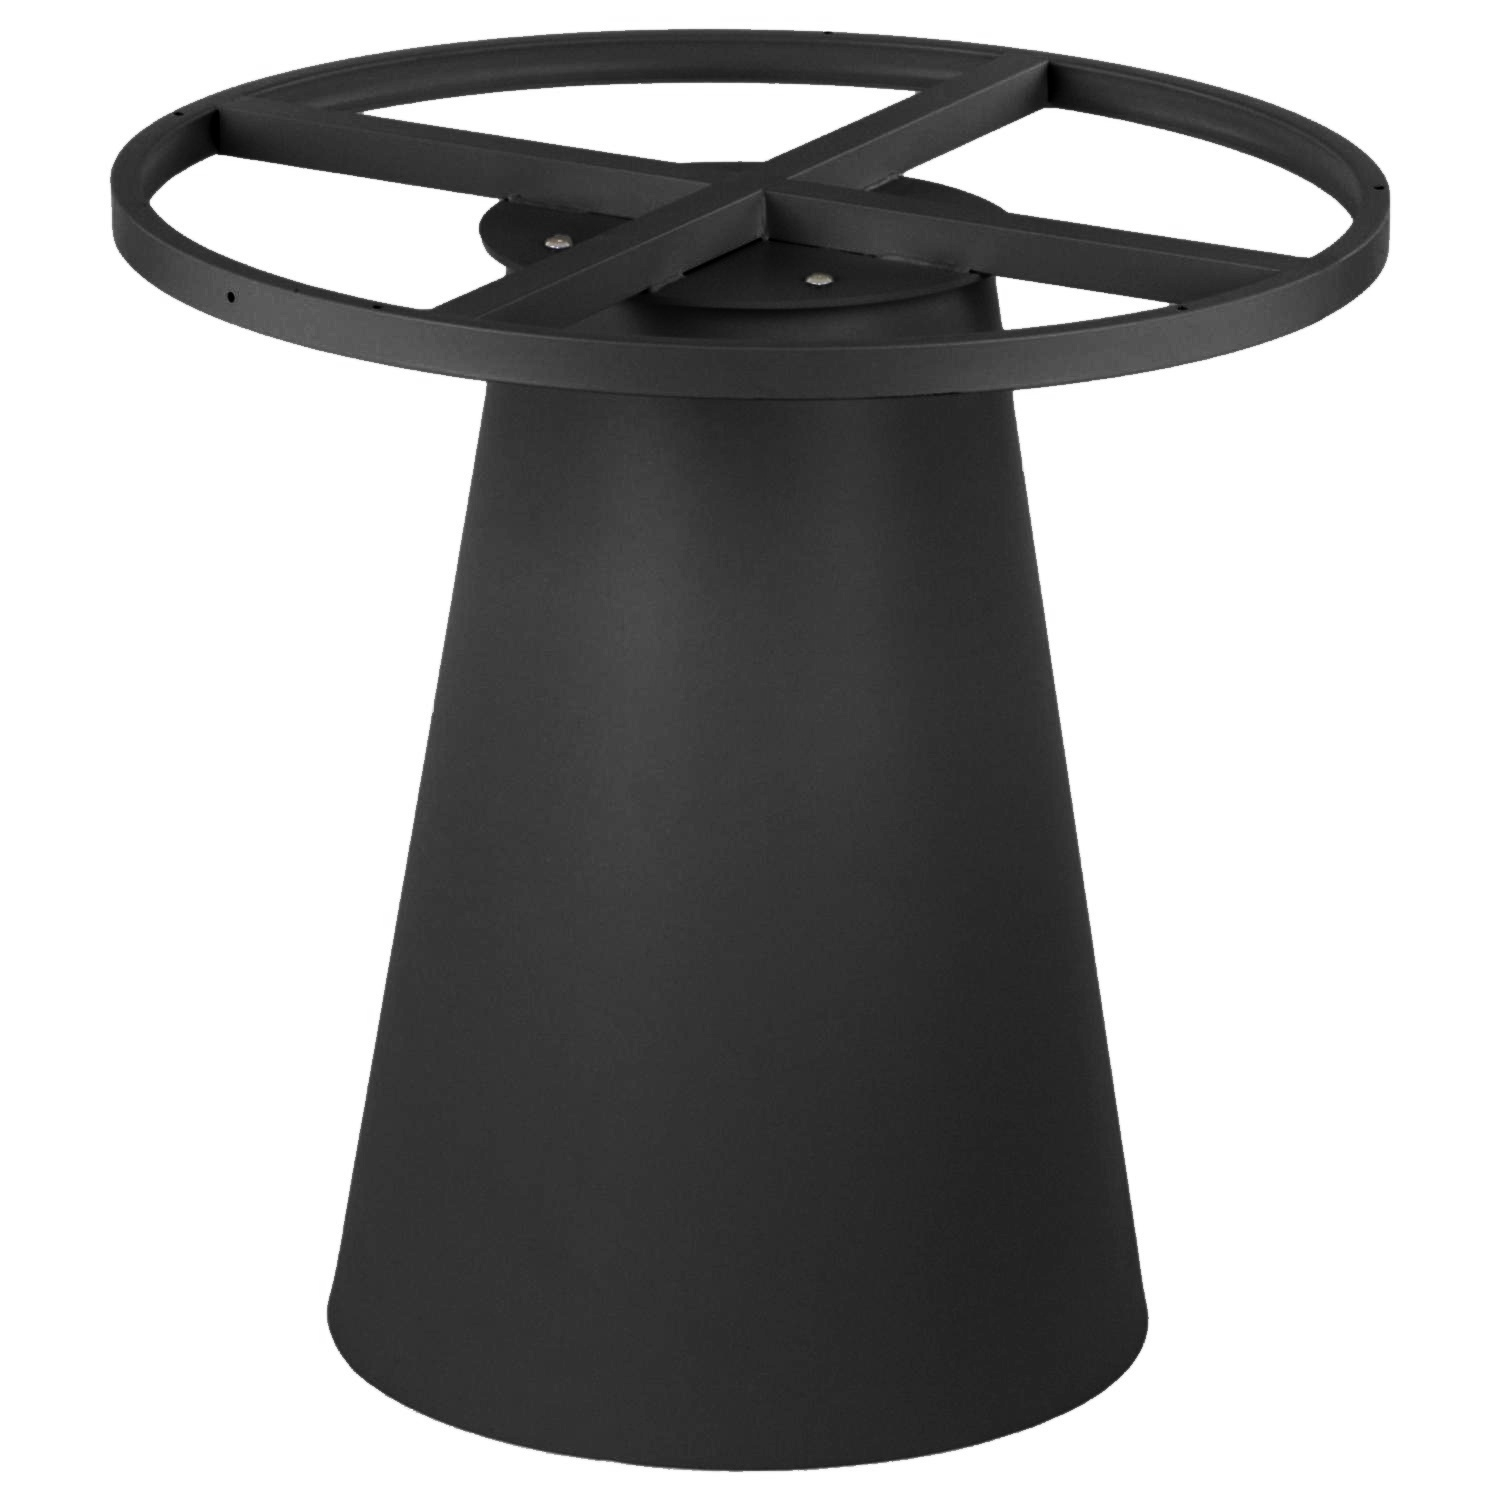 Podstawa do stolika SH-6671-2/B wysokość 72,5 cm, kolor czarny